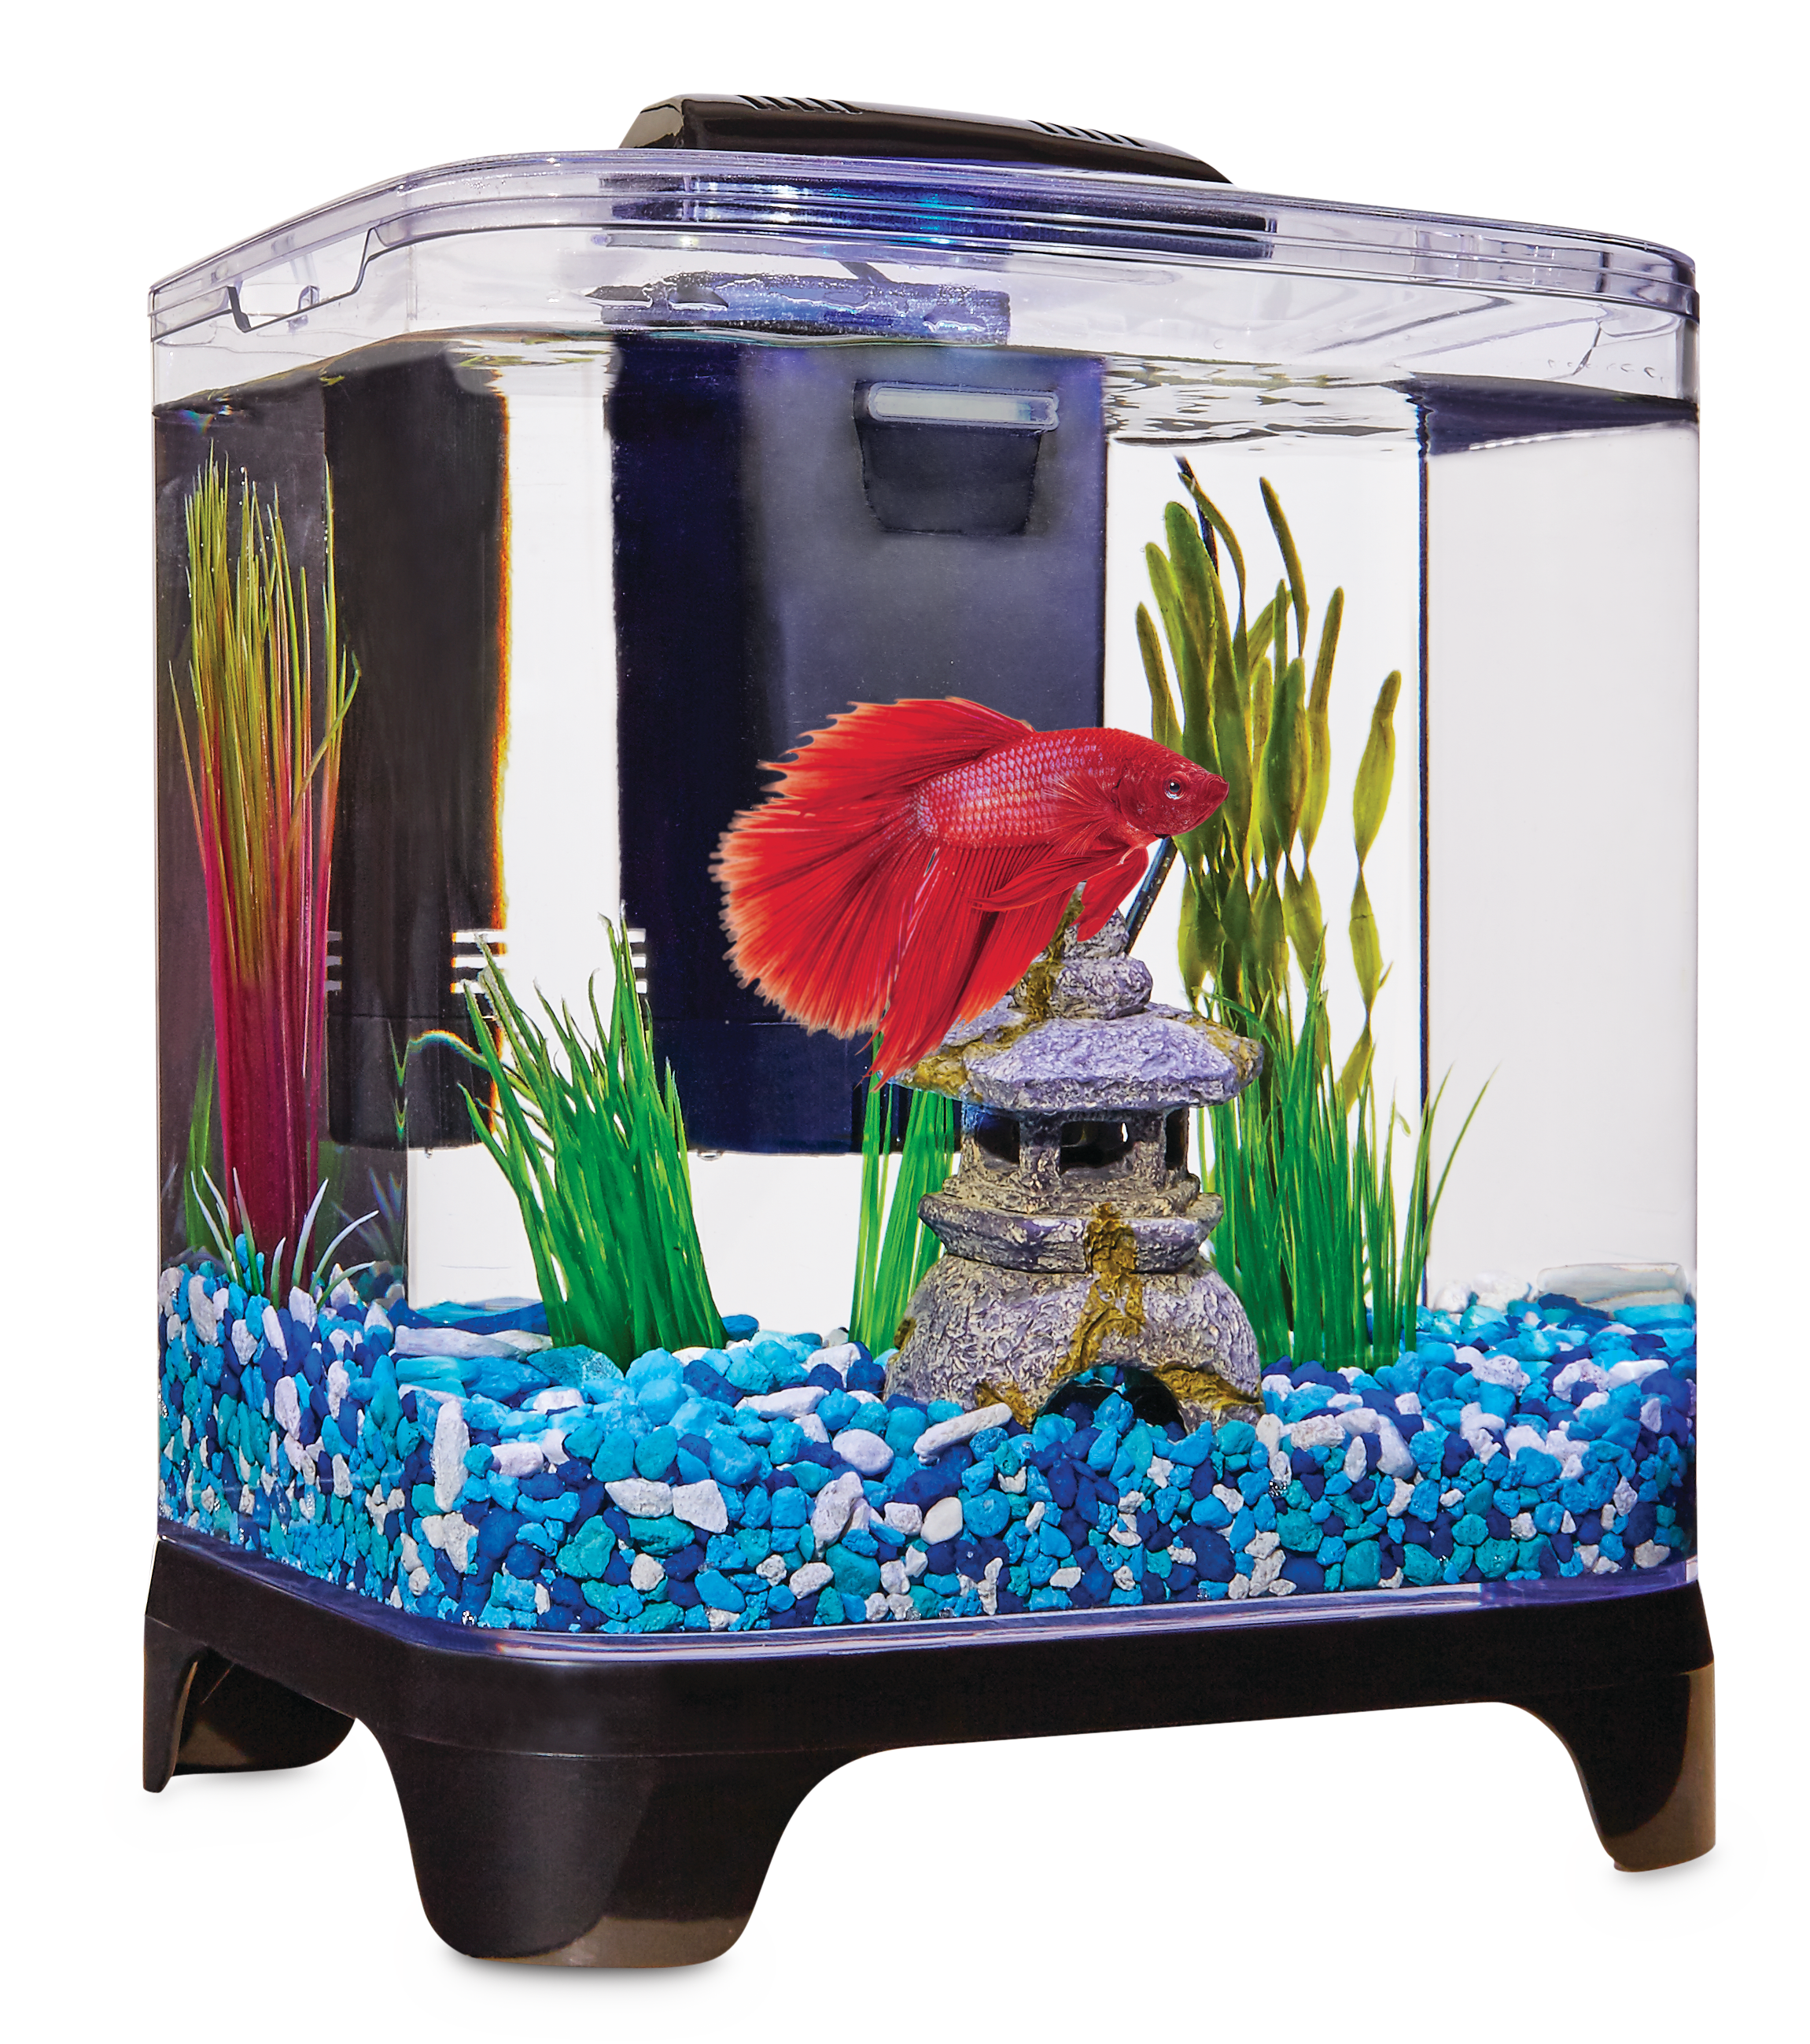 betta-fish-filter-amazon-com-penn-plax-betta-fish-tank-aquarium-kit-with-led-light-internal